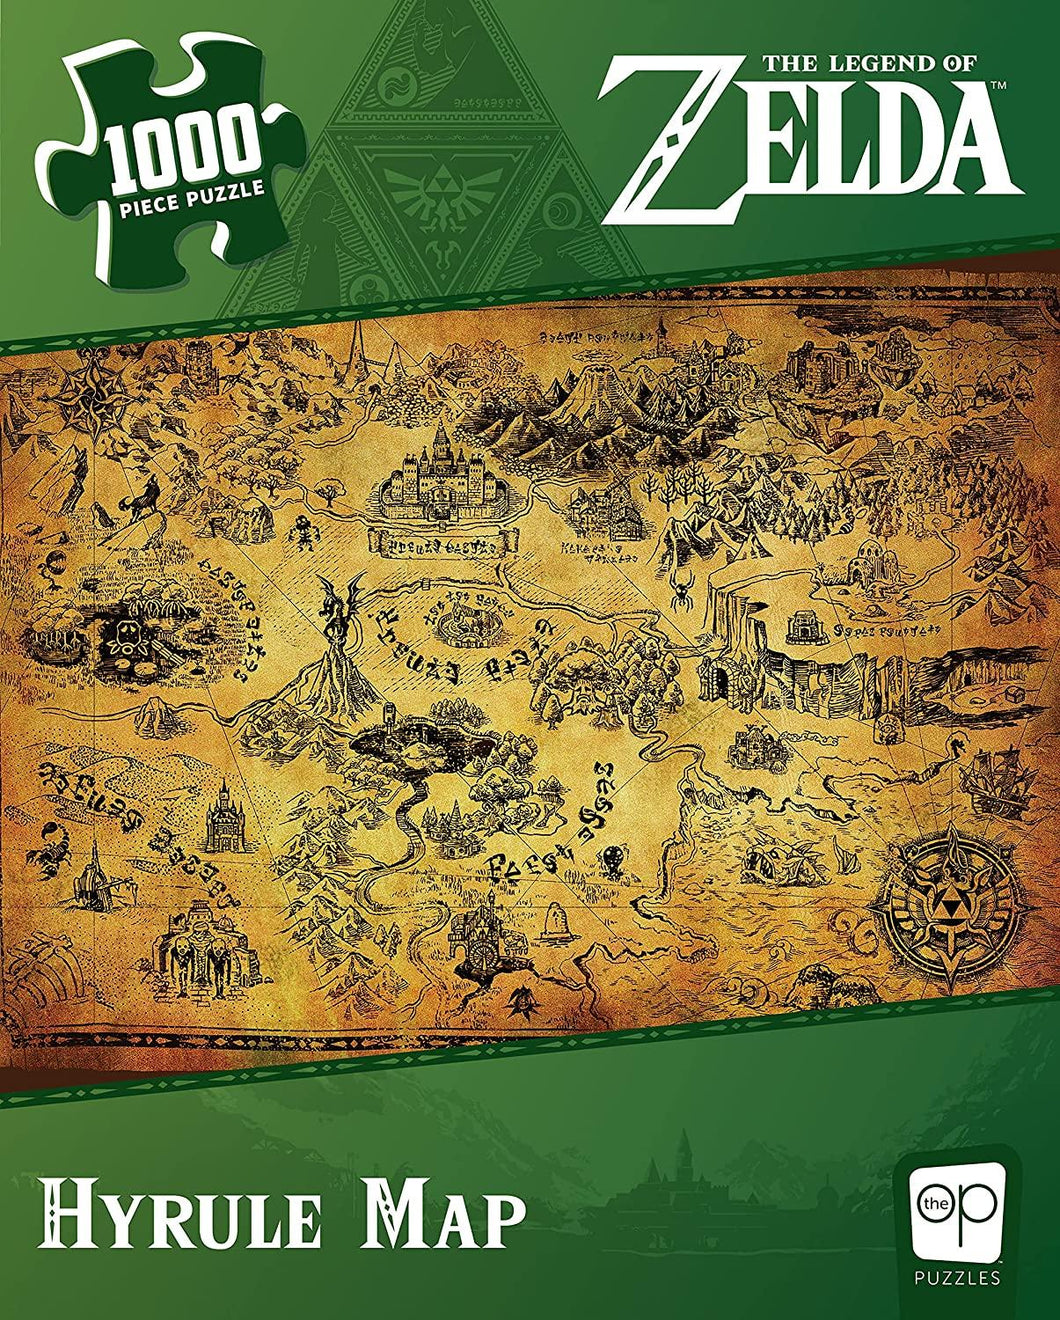 Zelda Hyrule Map - 1000 piece